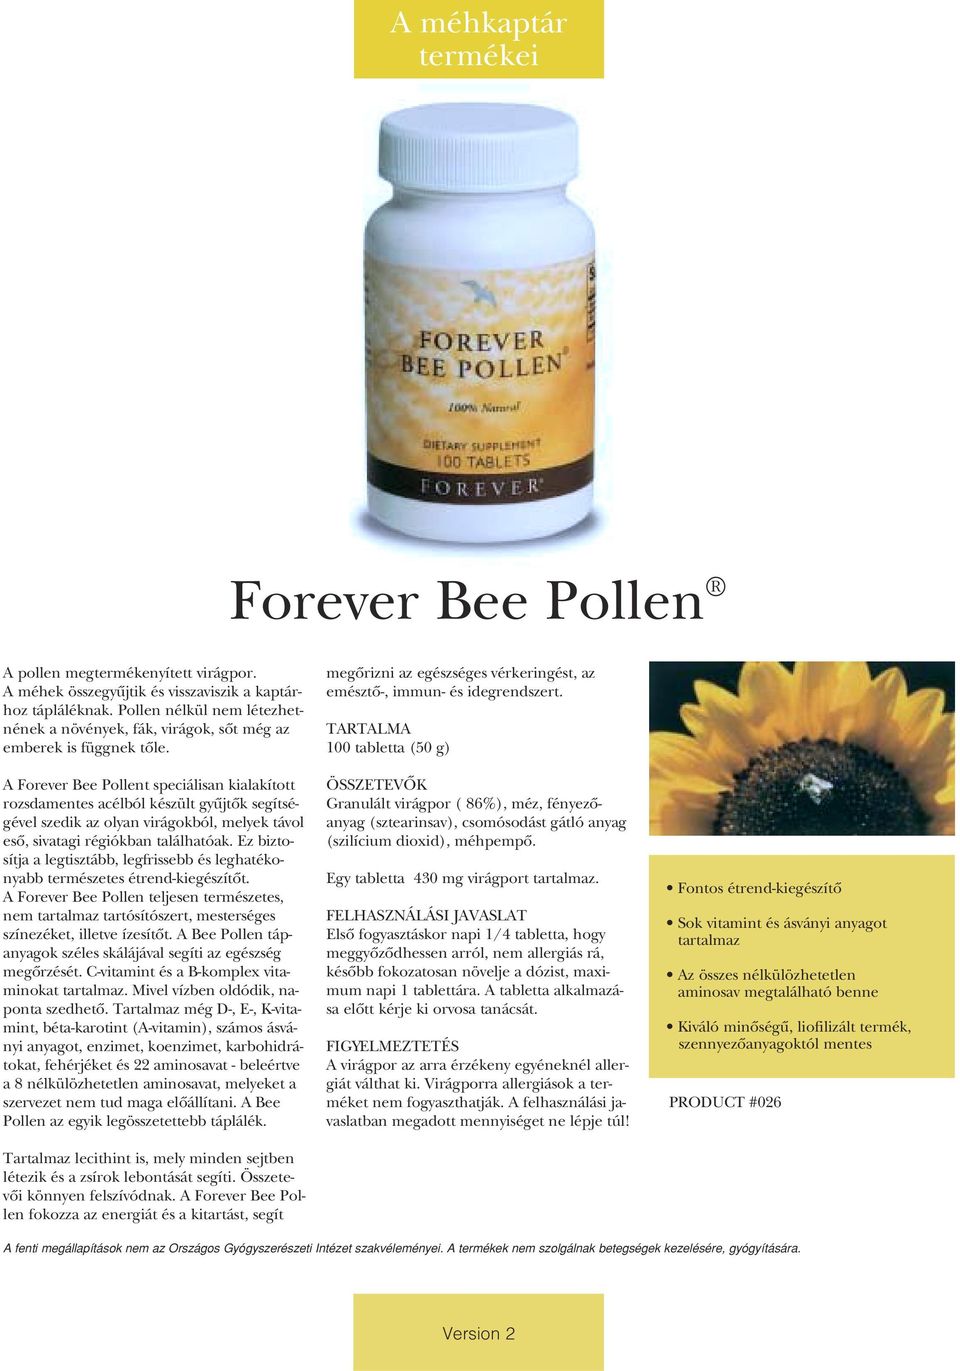 A Forever Bee Pollent speciálisan kialakított rozsdamentes acélból készült gyûjtôk segítségével szedik az olyan virágokból, melyek távol esô, sivatagi régiókban találhatóak.